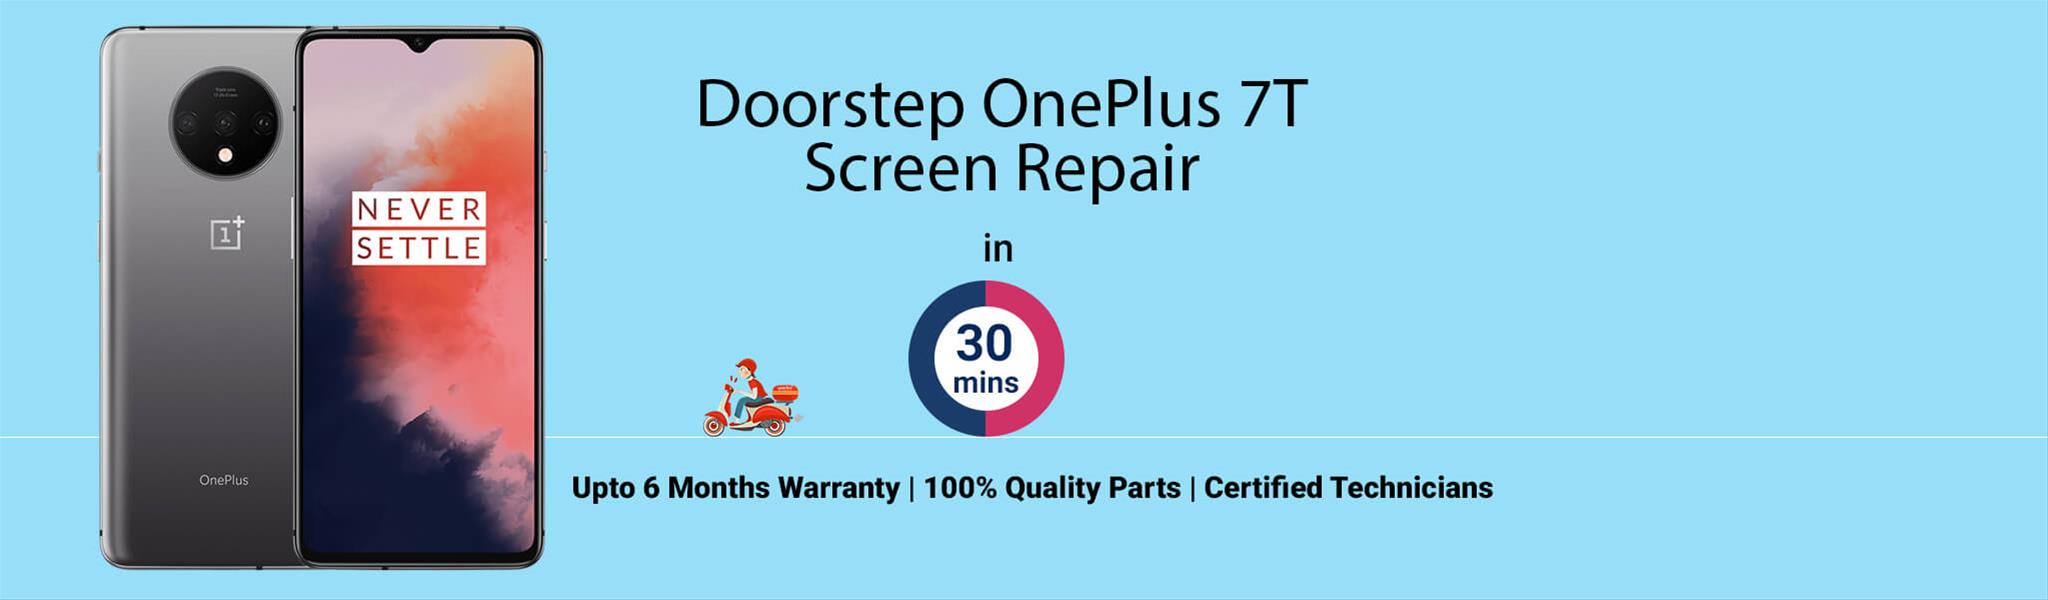 oneplus-7t-screen-repair.jpg